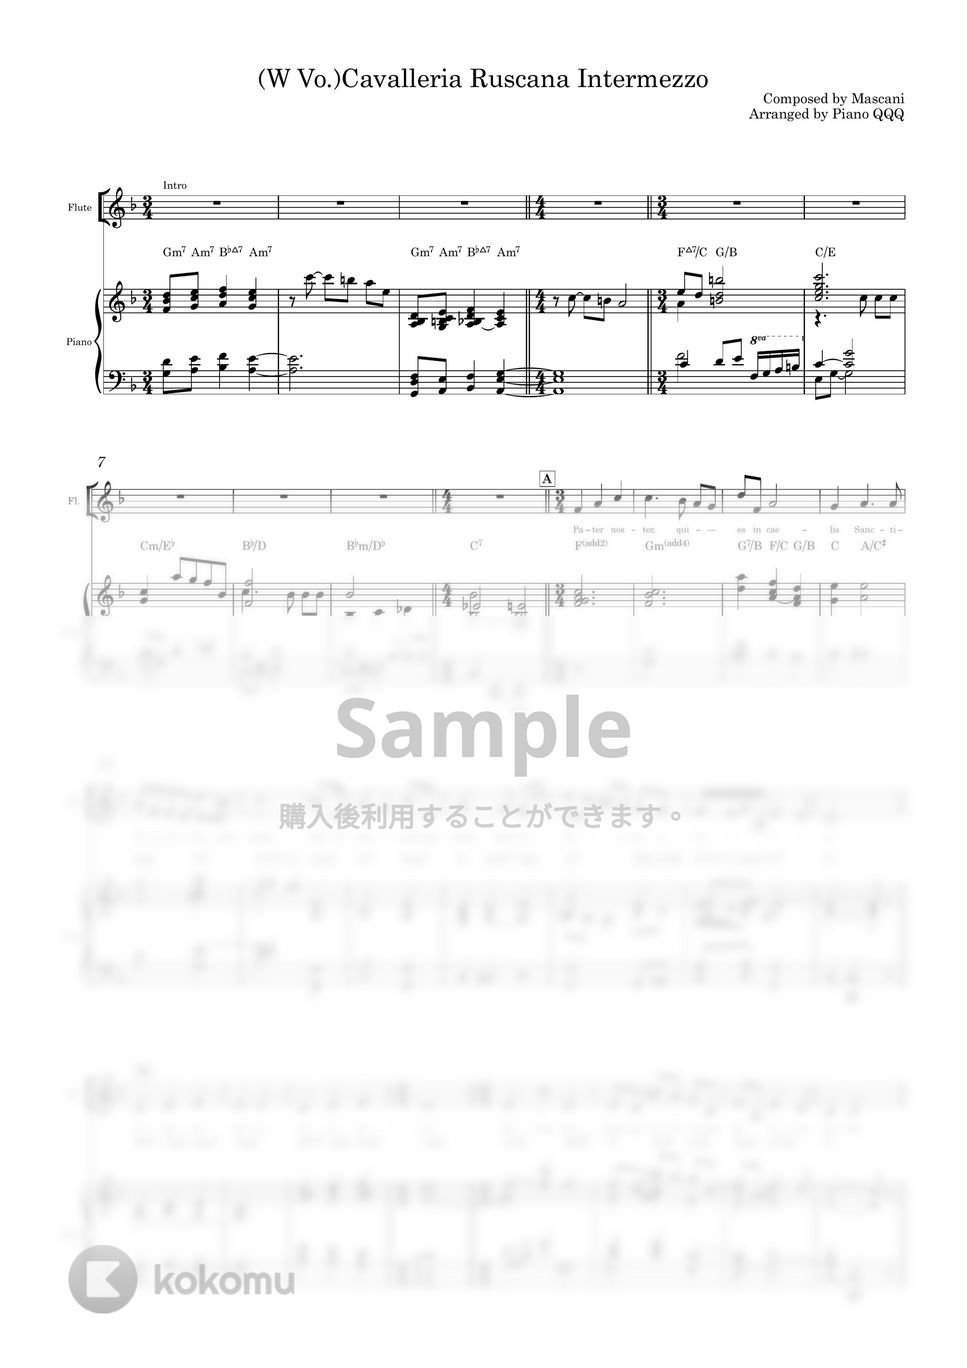 マスカーニ - カヴァレリア ルスティカーナ (ピアノ伴奏/主祈祷文/ラテン語) by Piano QQQ